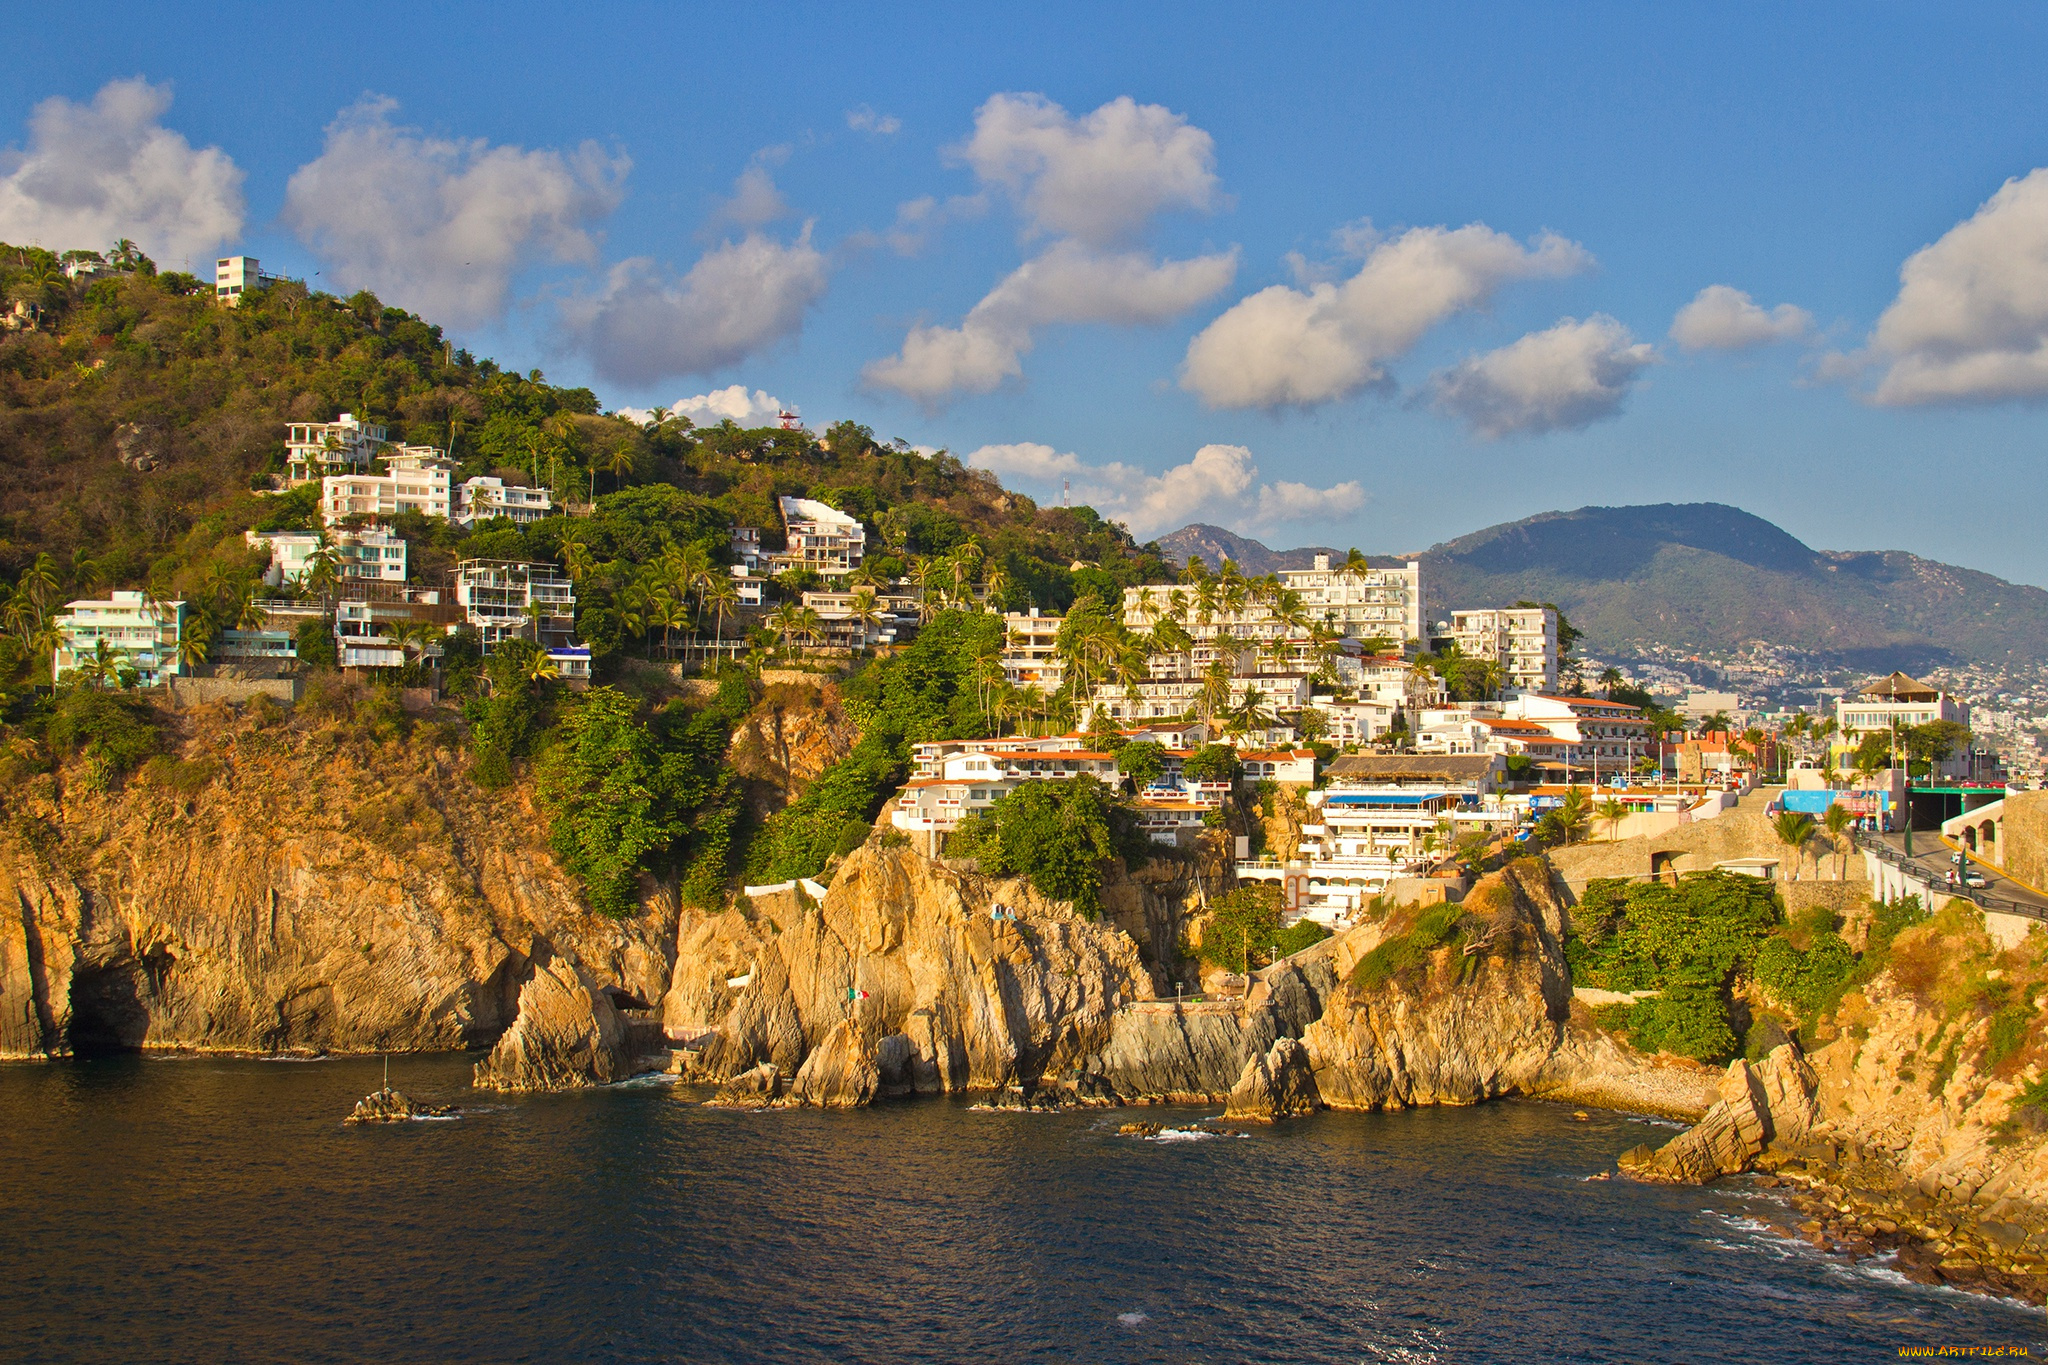 города, -, панорамы, море, горы, дома, acapulco, солнце, небо, скалы, облака, мексика, побережье, деревья